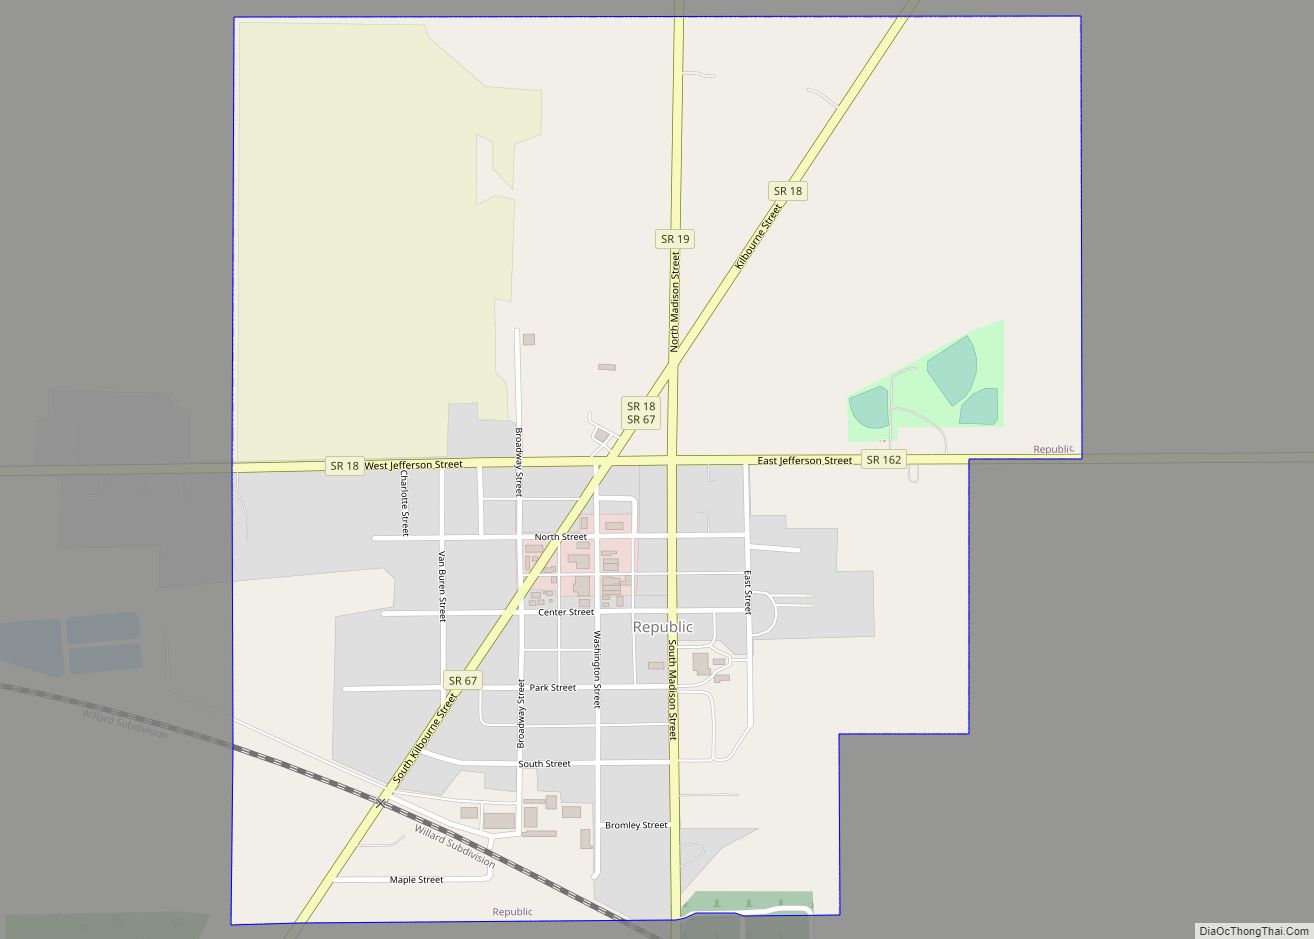 Map of Republic village, Ohio